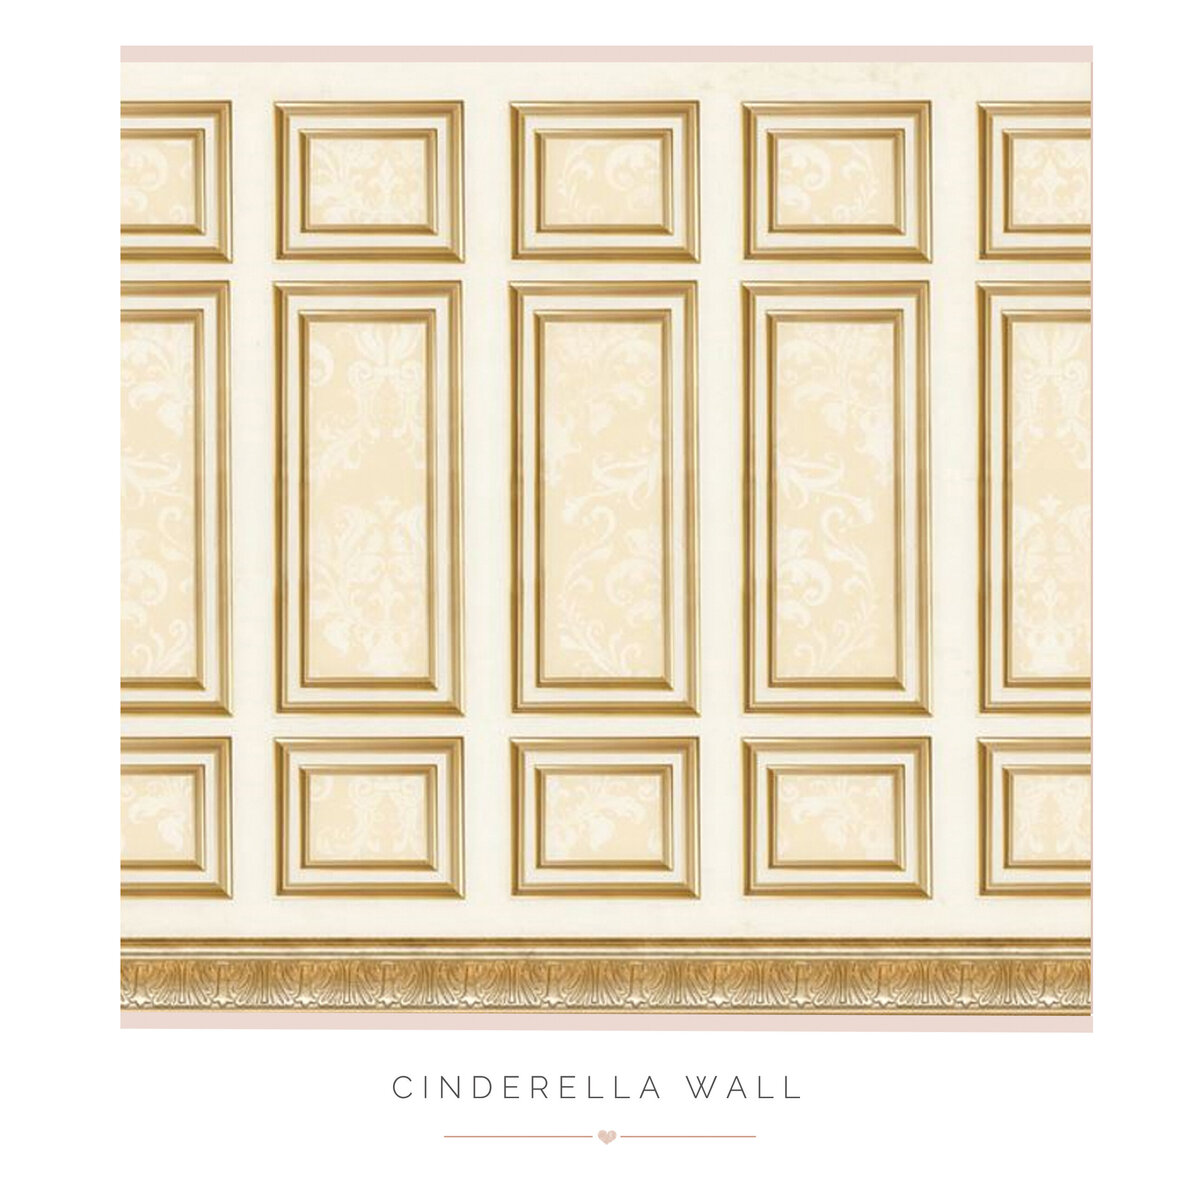 Cinderella Wall